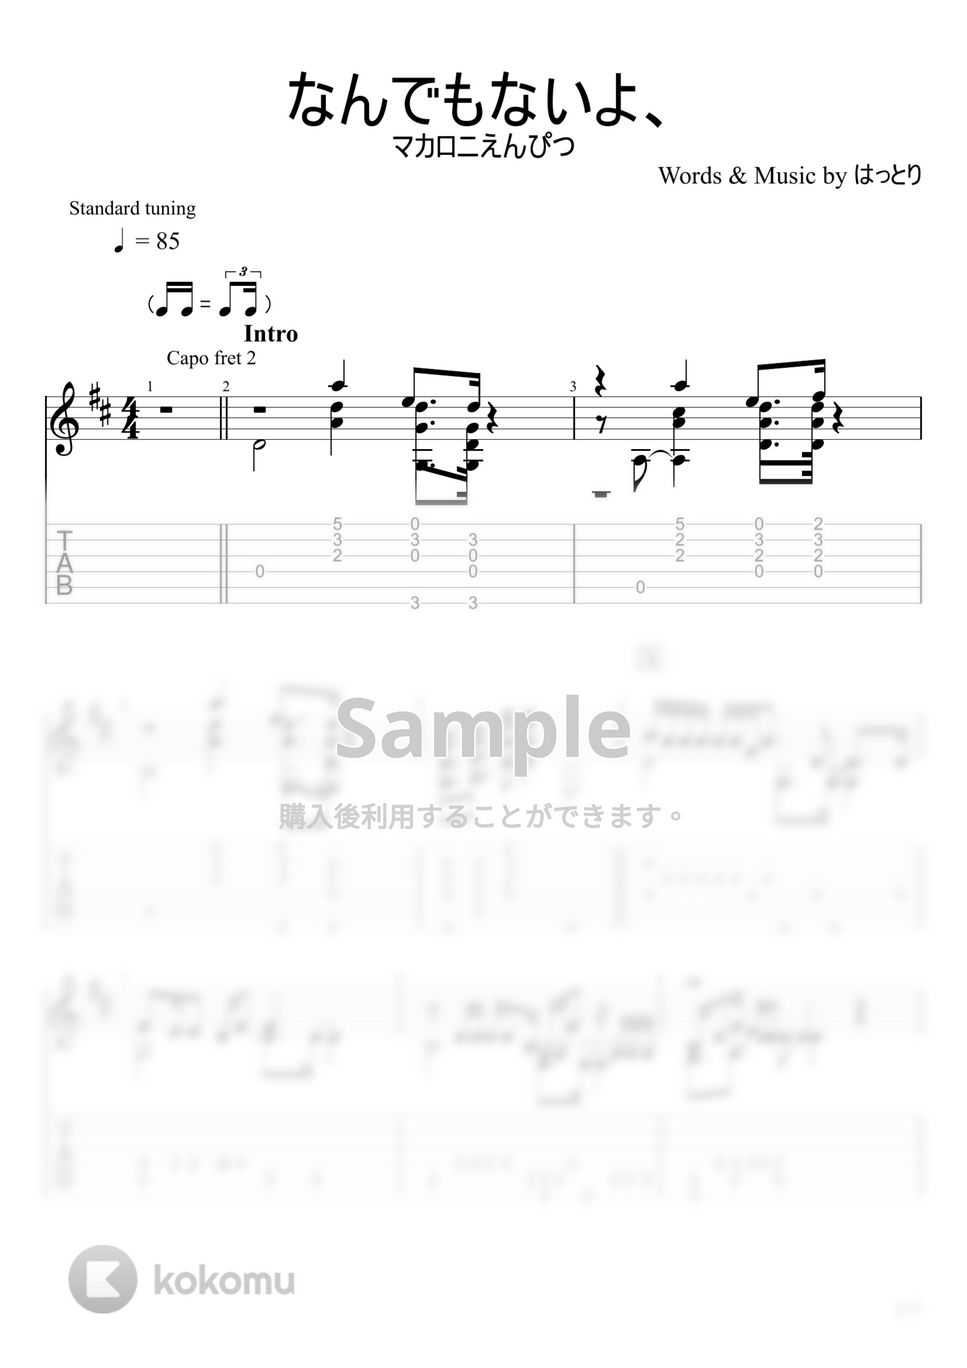 マカロニえんぴつ - なんでもないよ、 (ソロギター) by u3danchou